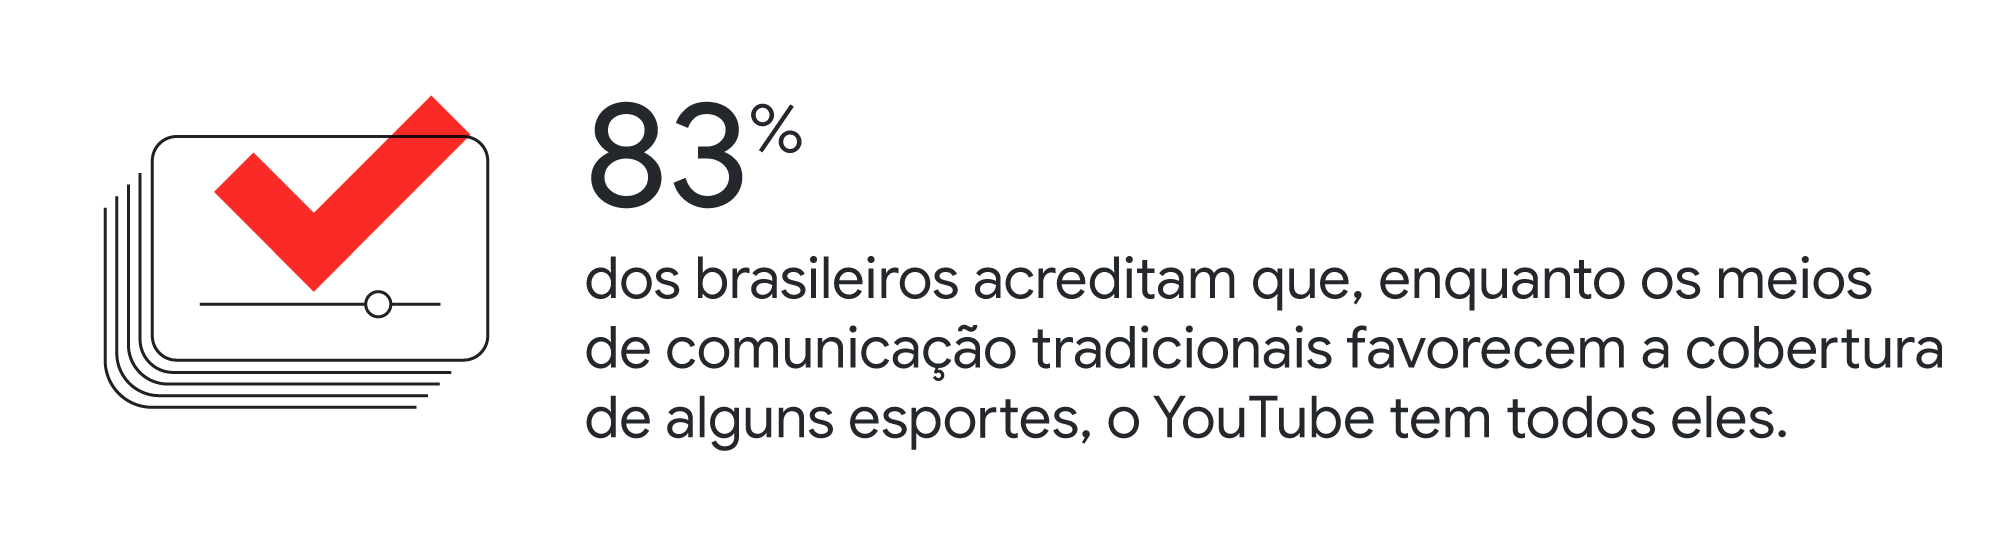 Vibes: as novas fronteiras do esporte no Brasil - Think with Google